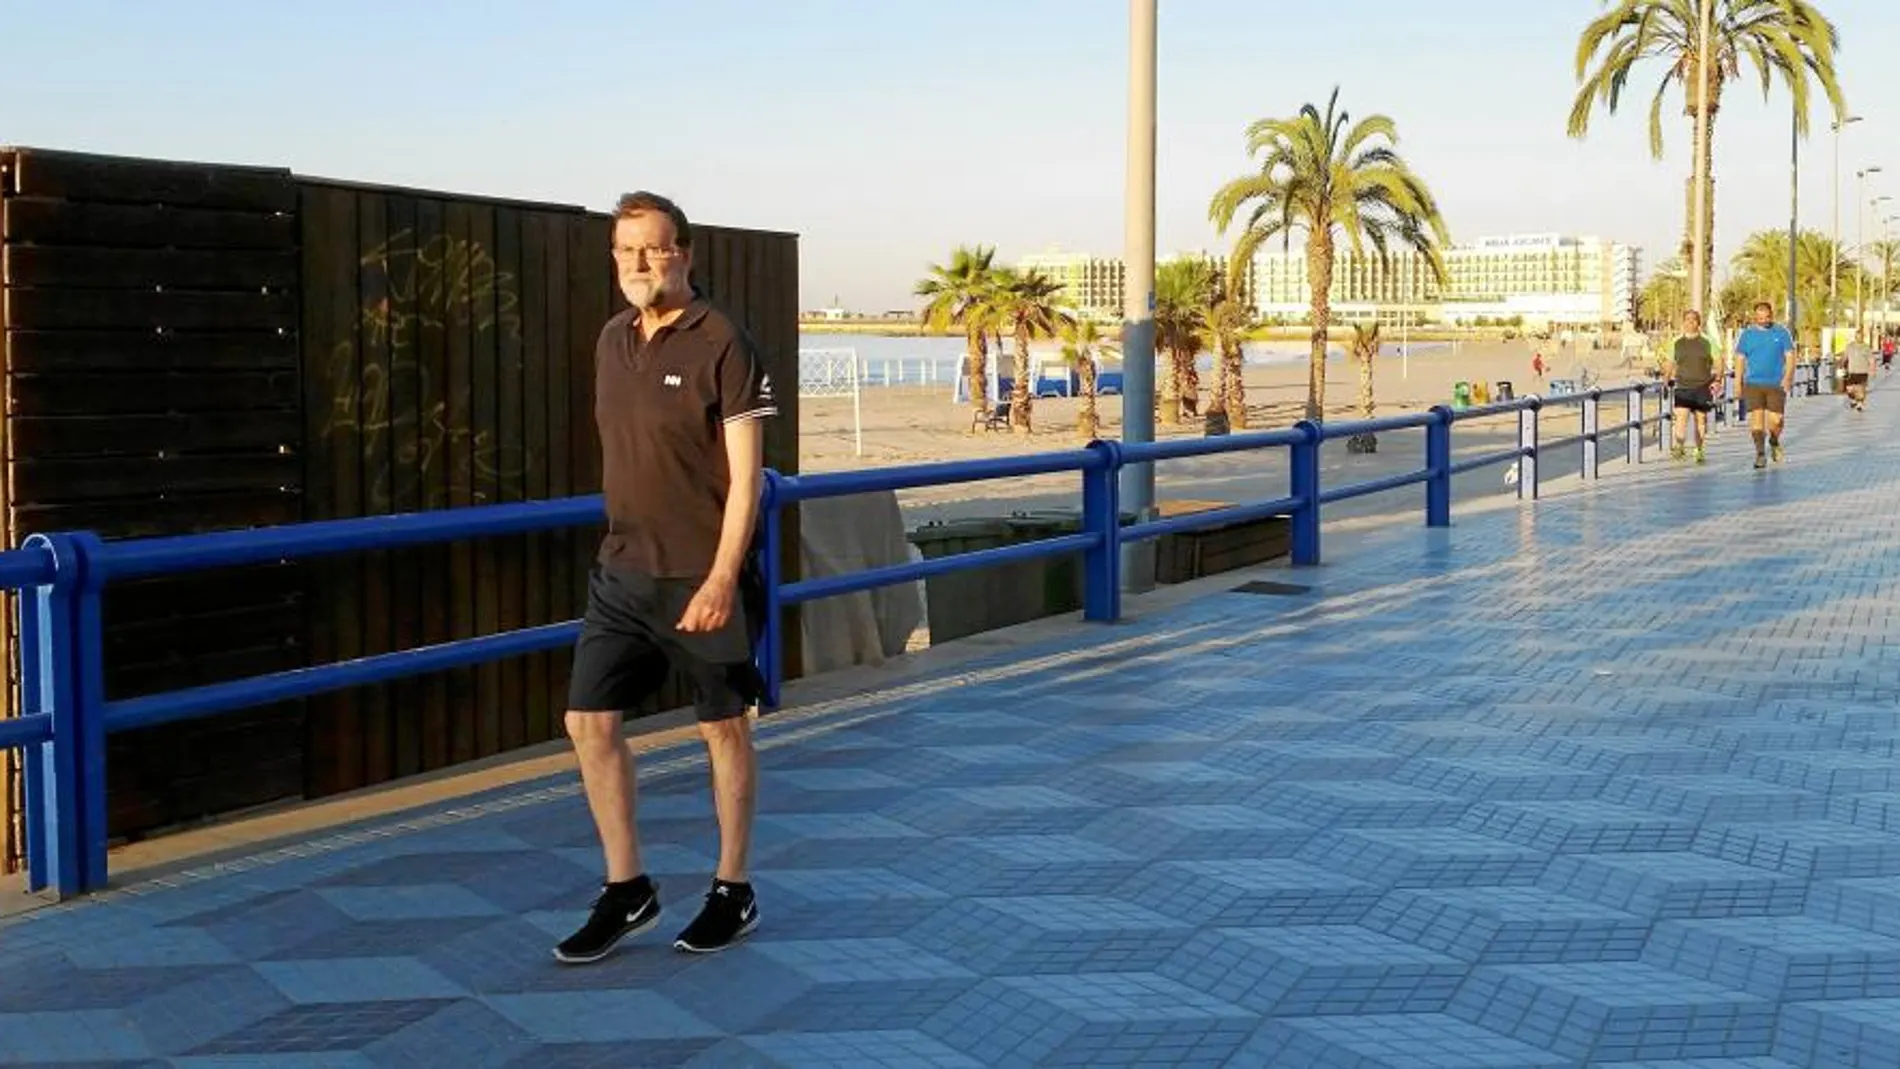 Día Internacional del Rajoy sorprendió ayer a los alicantinos al salir a caminar por el paseo marítimo de El Postiguet en Alicante a primera hora de la mañana